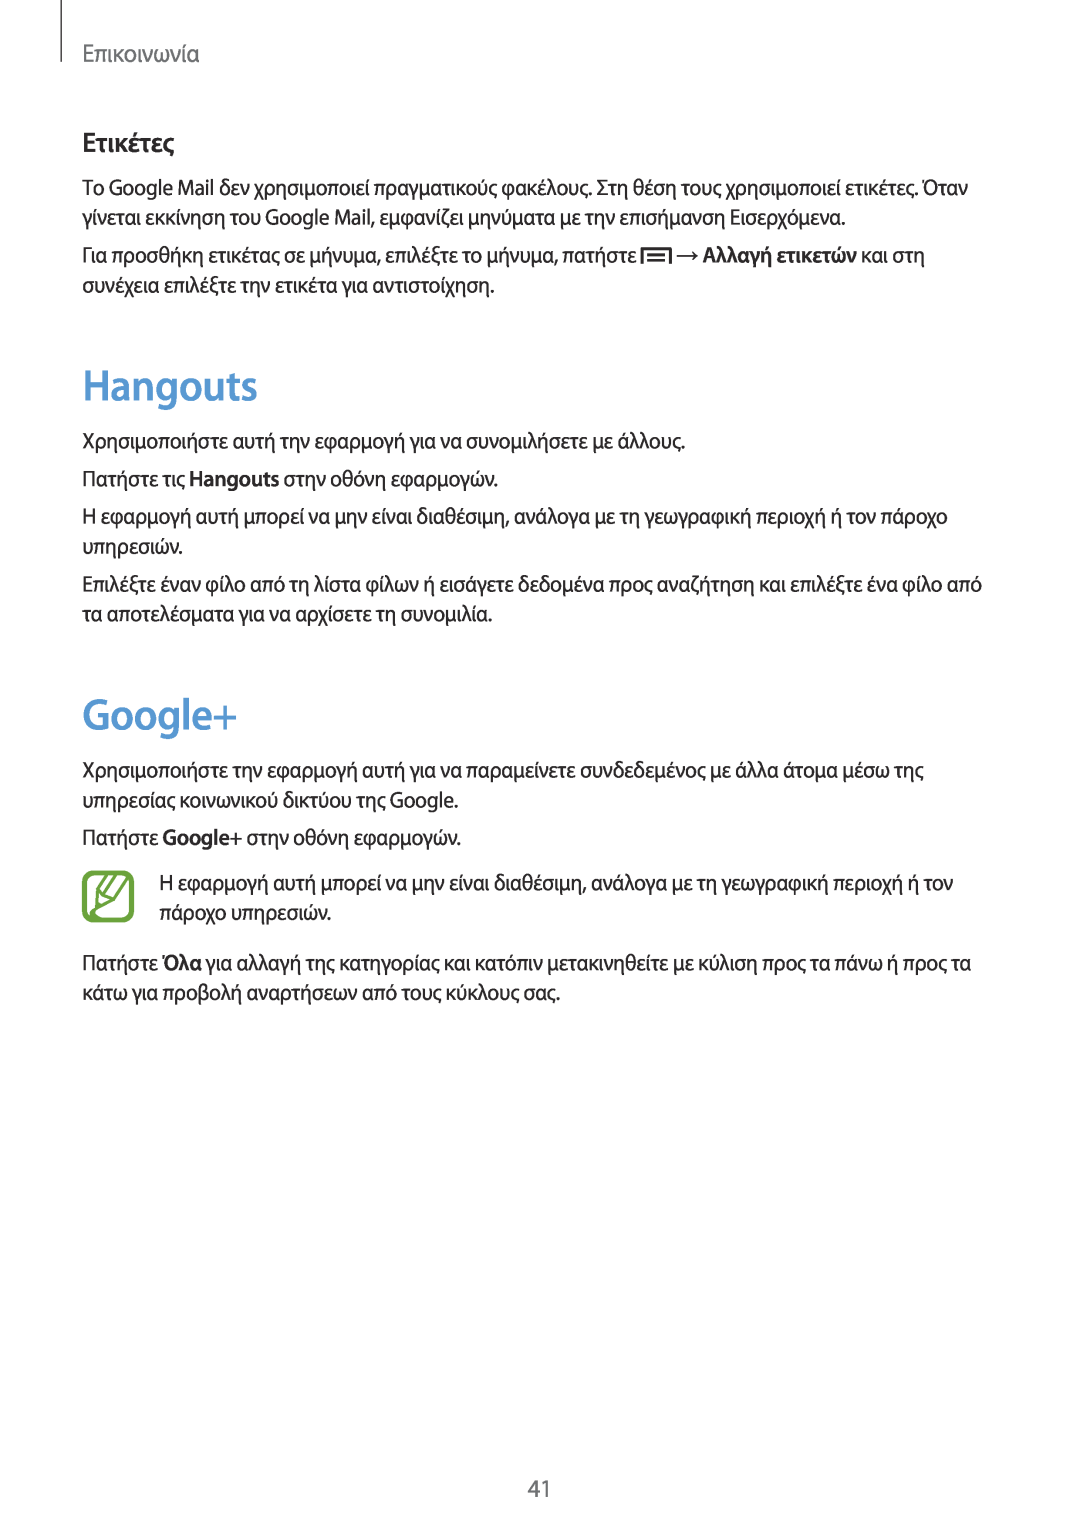 Samsung GT-P5210ZWAEUR, GT-P5210MKAEUR manual Hangouts, Google+, Ετικέτες, Επικοινωνία 